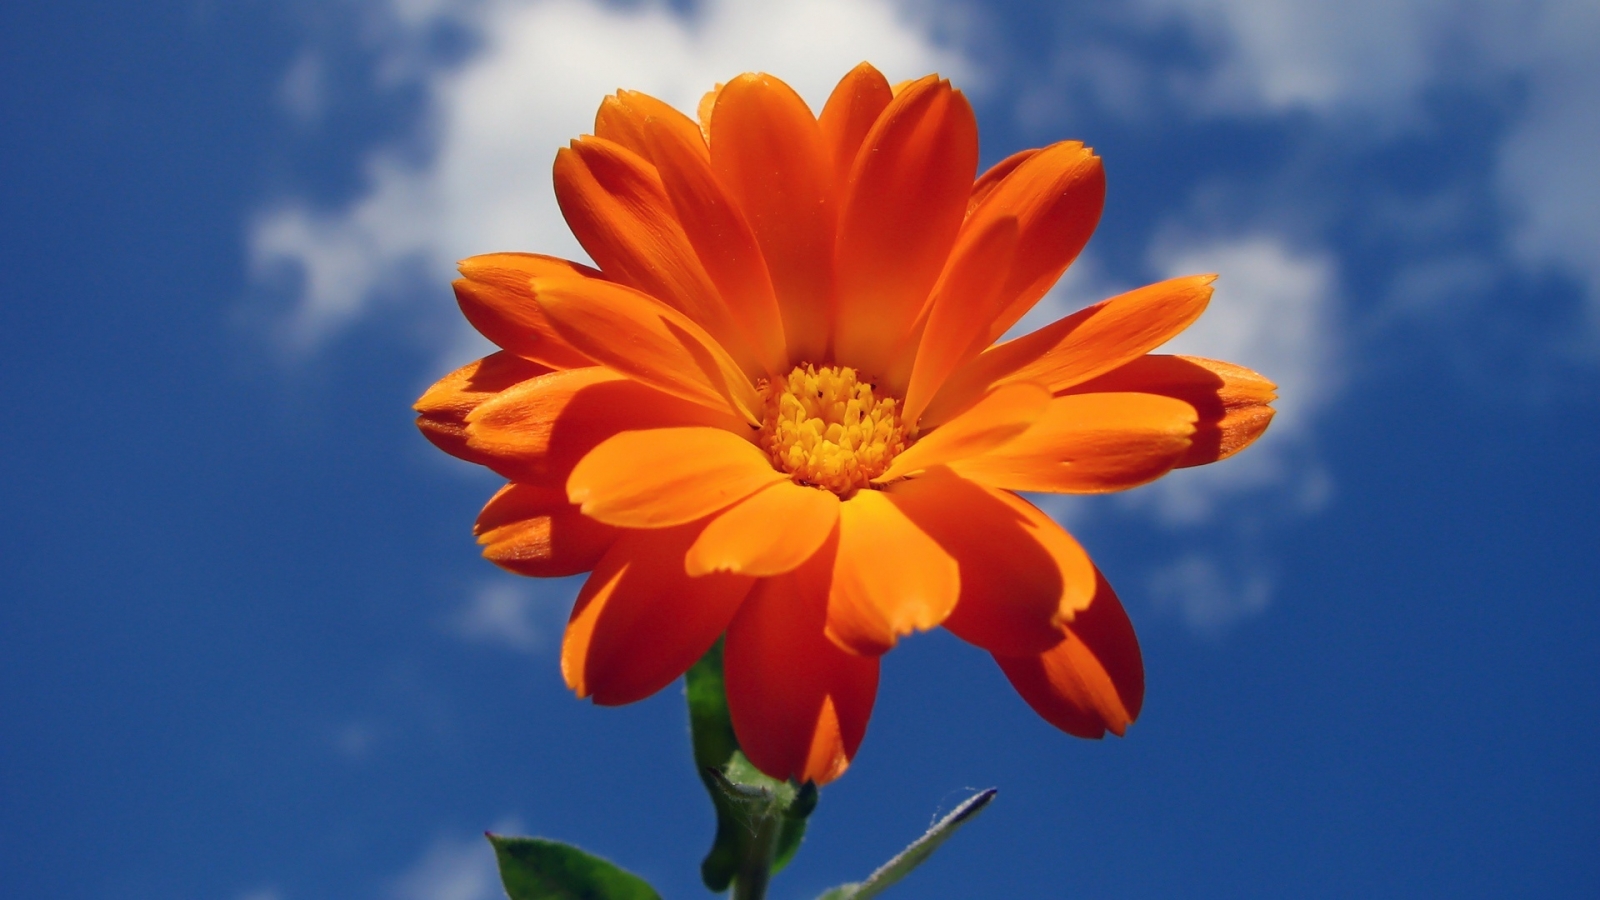 Orange Nice Flower for 1600 x 900 HDTV resolution